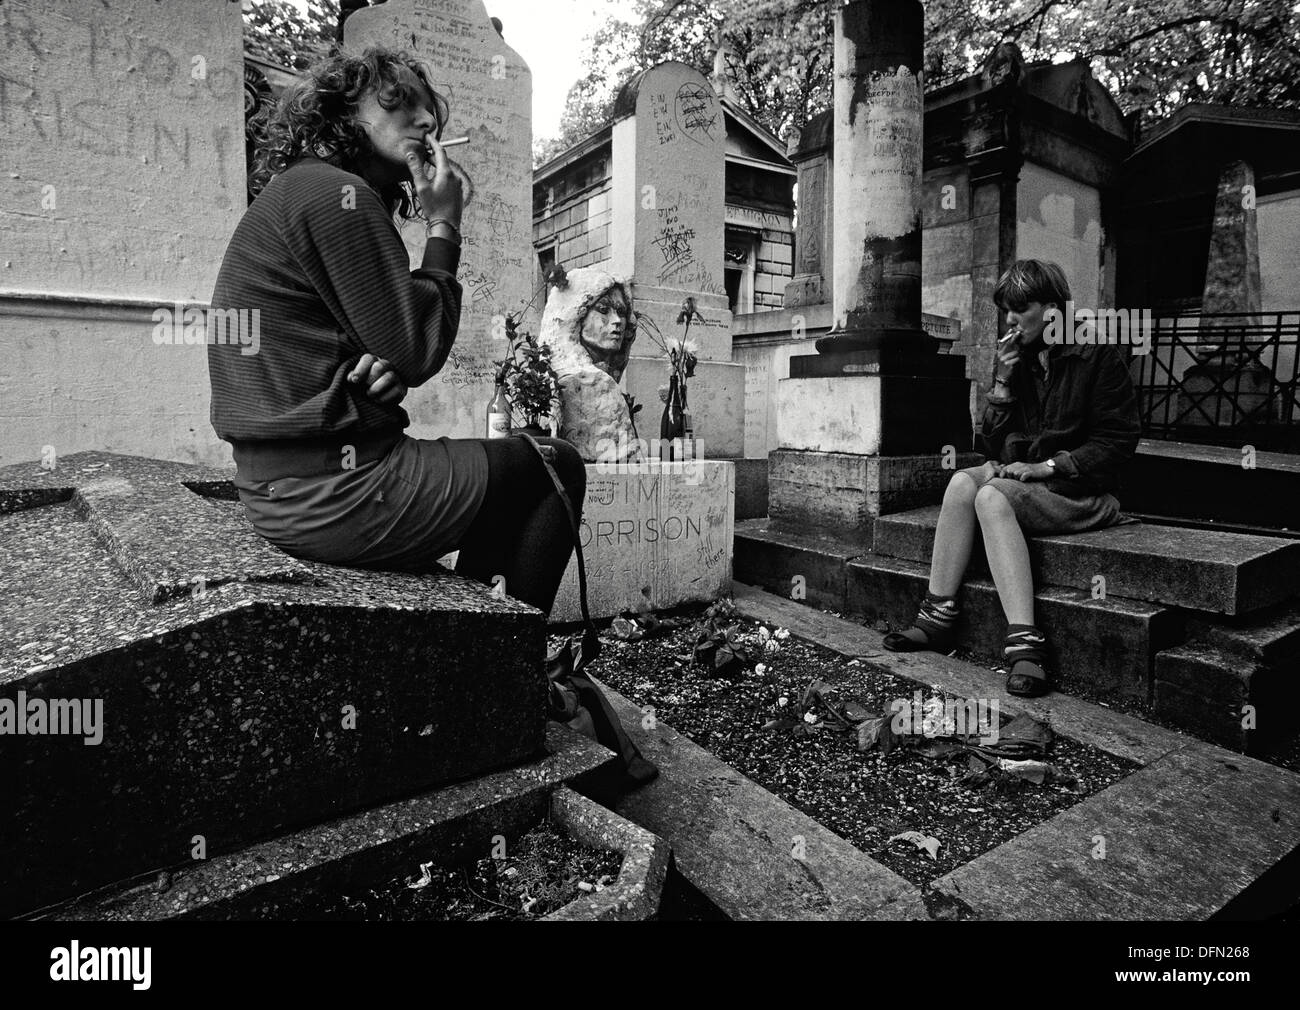 La tombe de Jim Morrison en 1983 au cimetière du Père Lachaise, situé dans le 20e arrondissement de Paris Banque D'Images